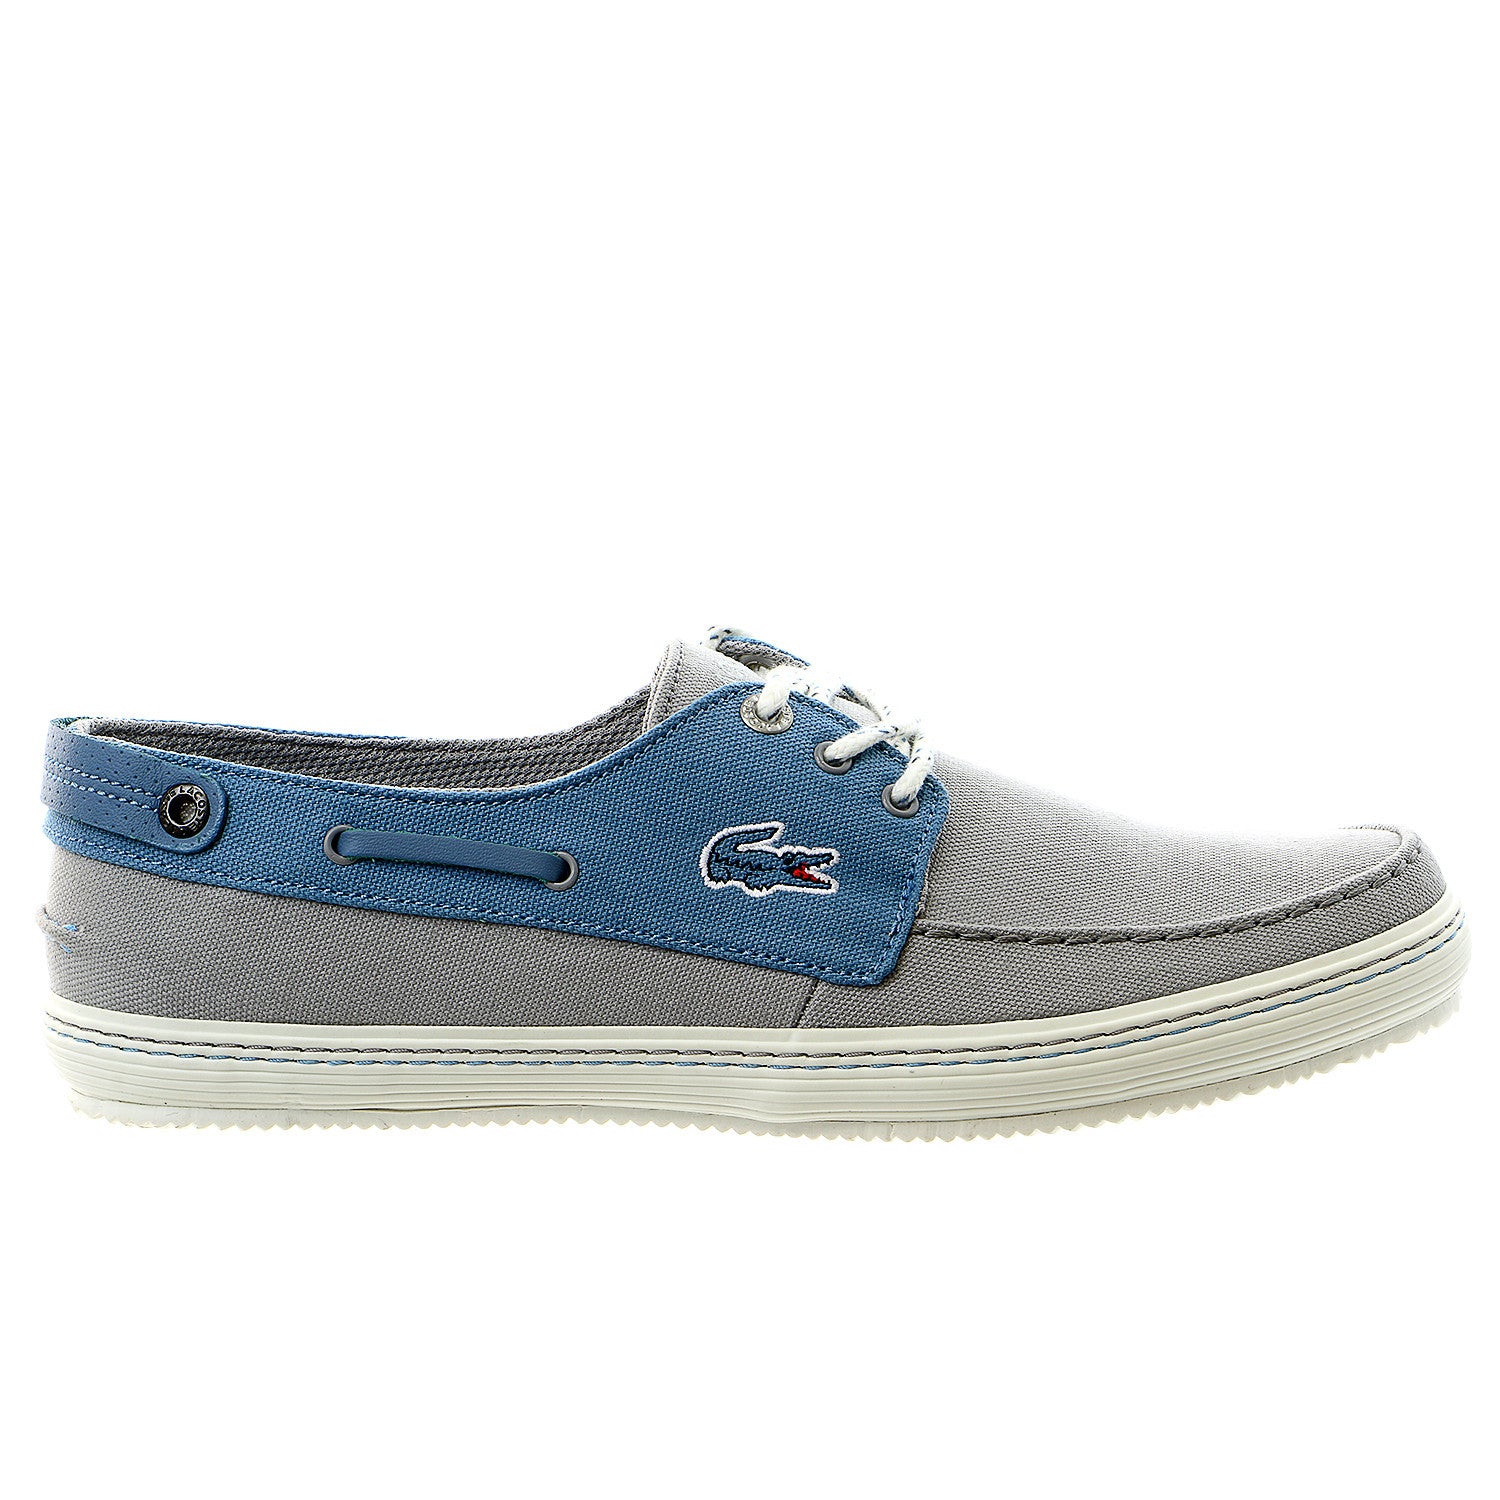 Opaco efectivo Recepción Lacoste Sumac 8 Moccasin Boat Shoe - Light Grey/Blue - Mens - Shoplifestyle